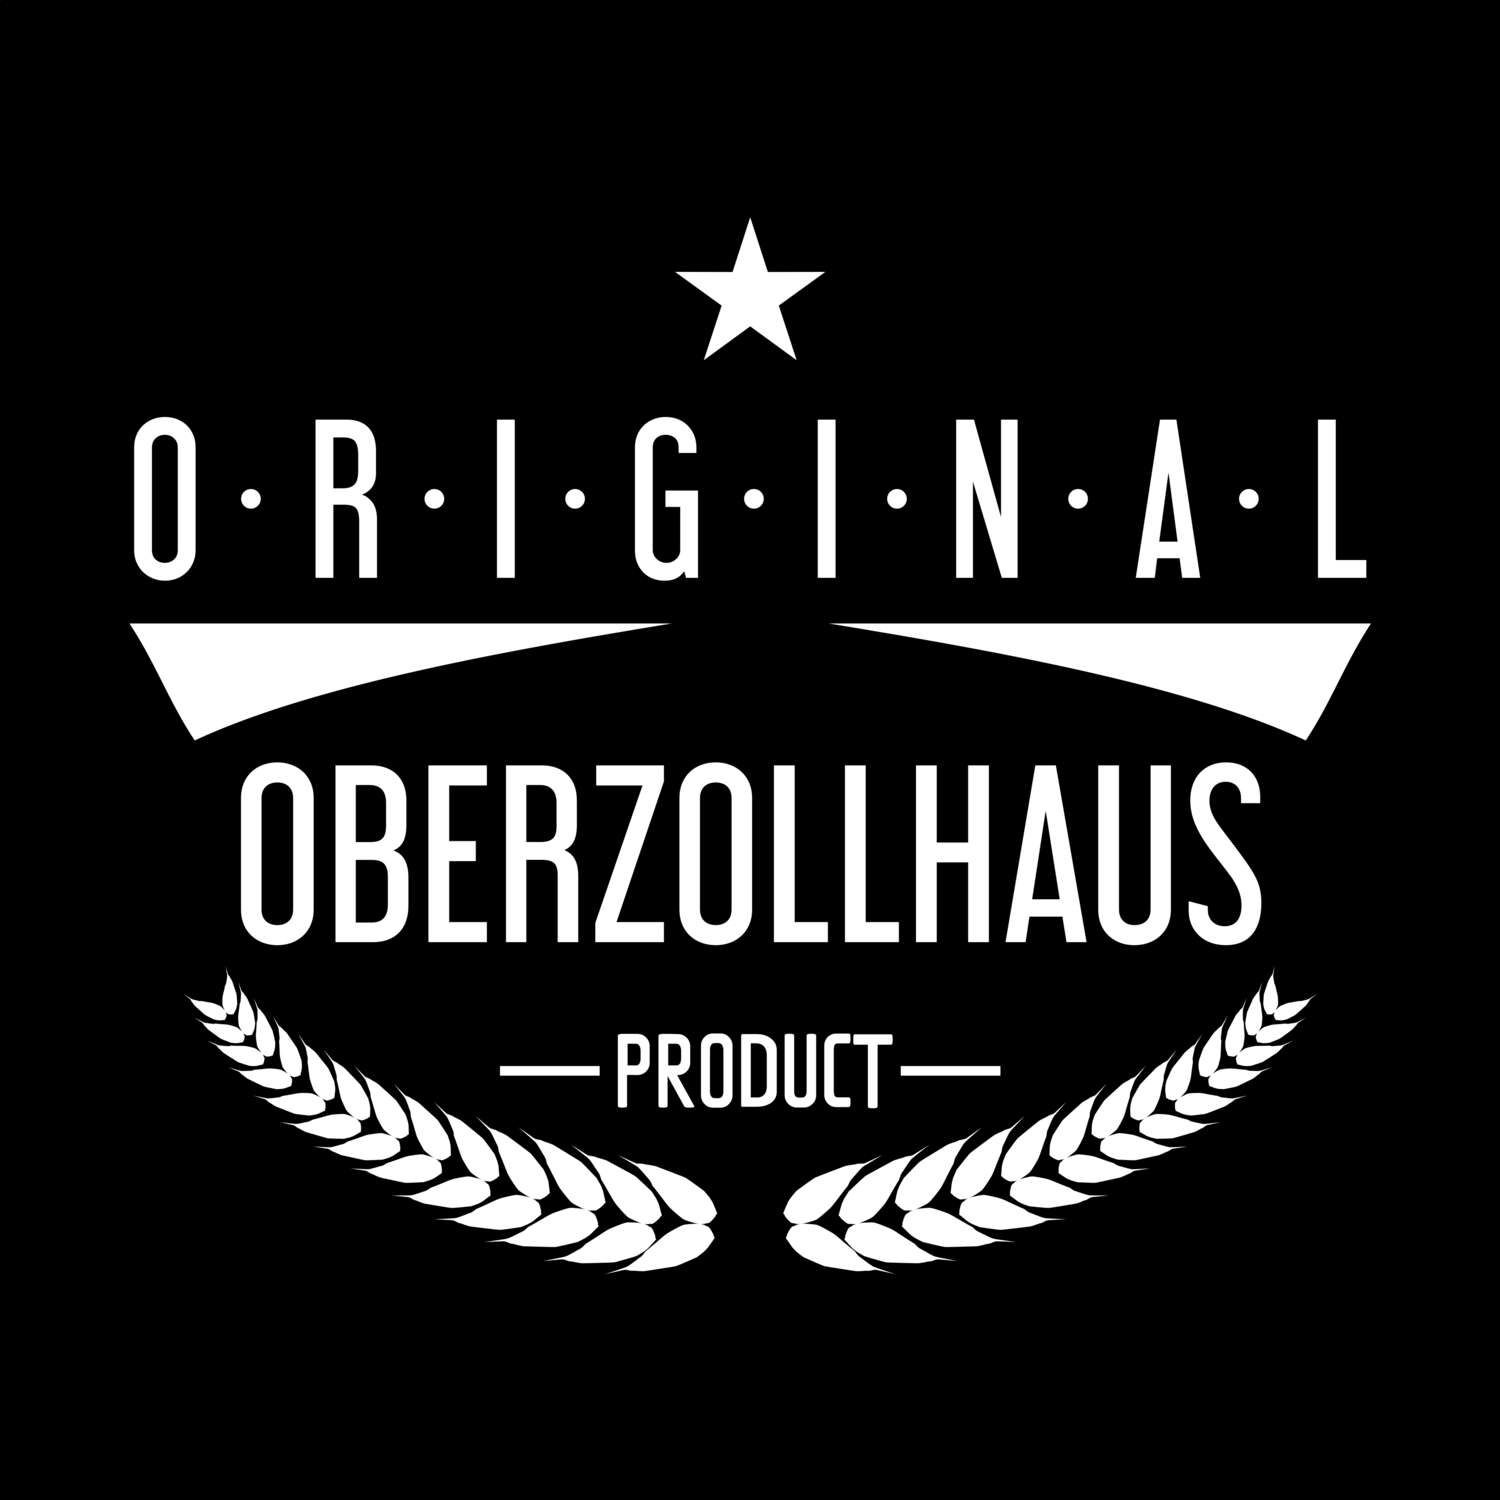 Oberzollhaus T-Shirt »Original Product«